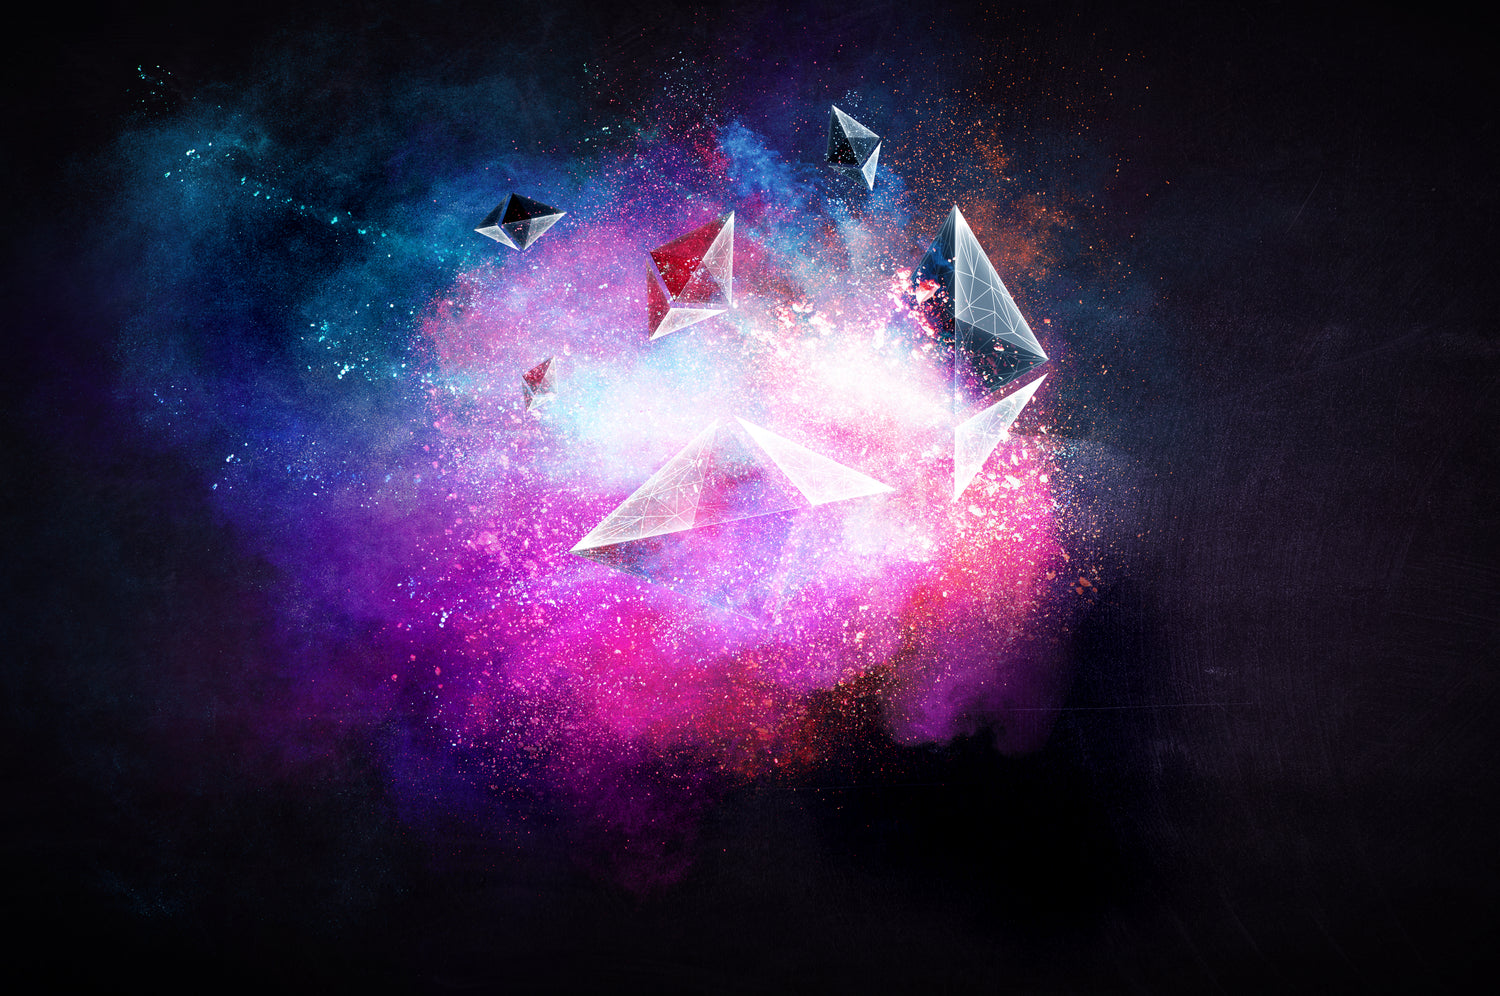 Prismas triangulares volando en una explosión de polvo y purpurina rosa y azul.